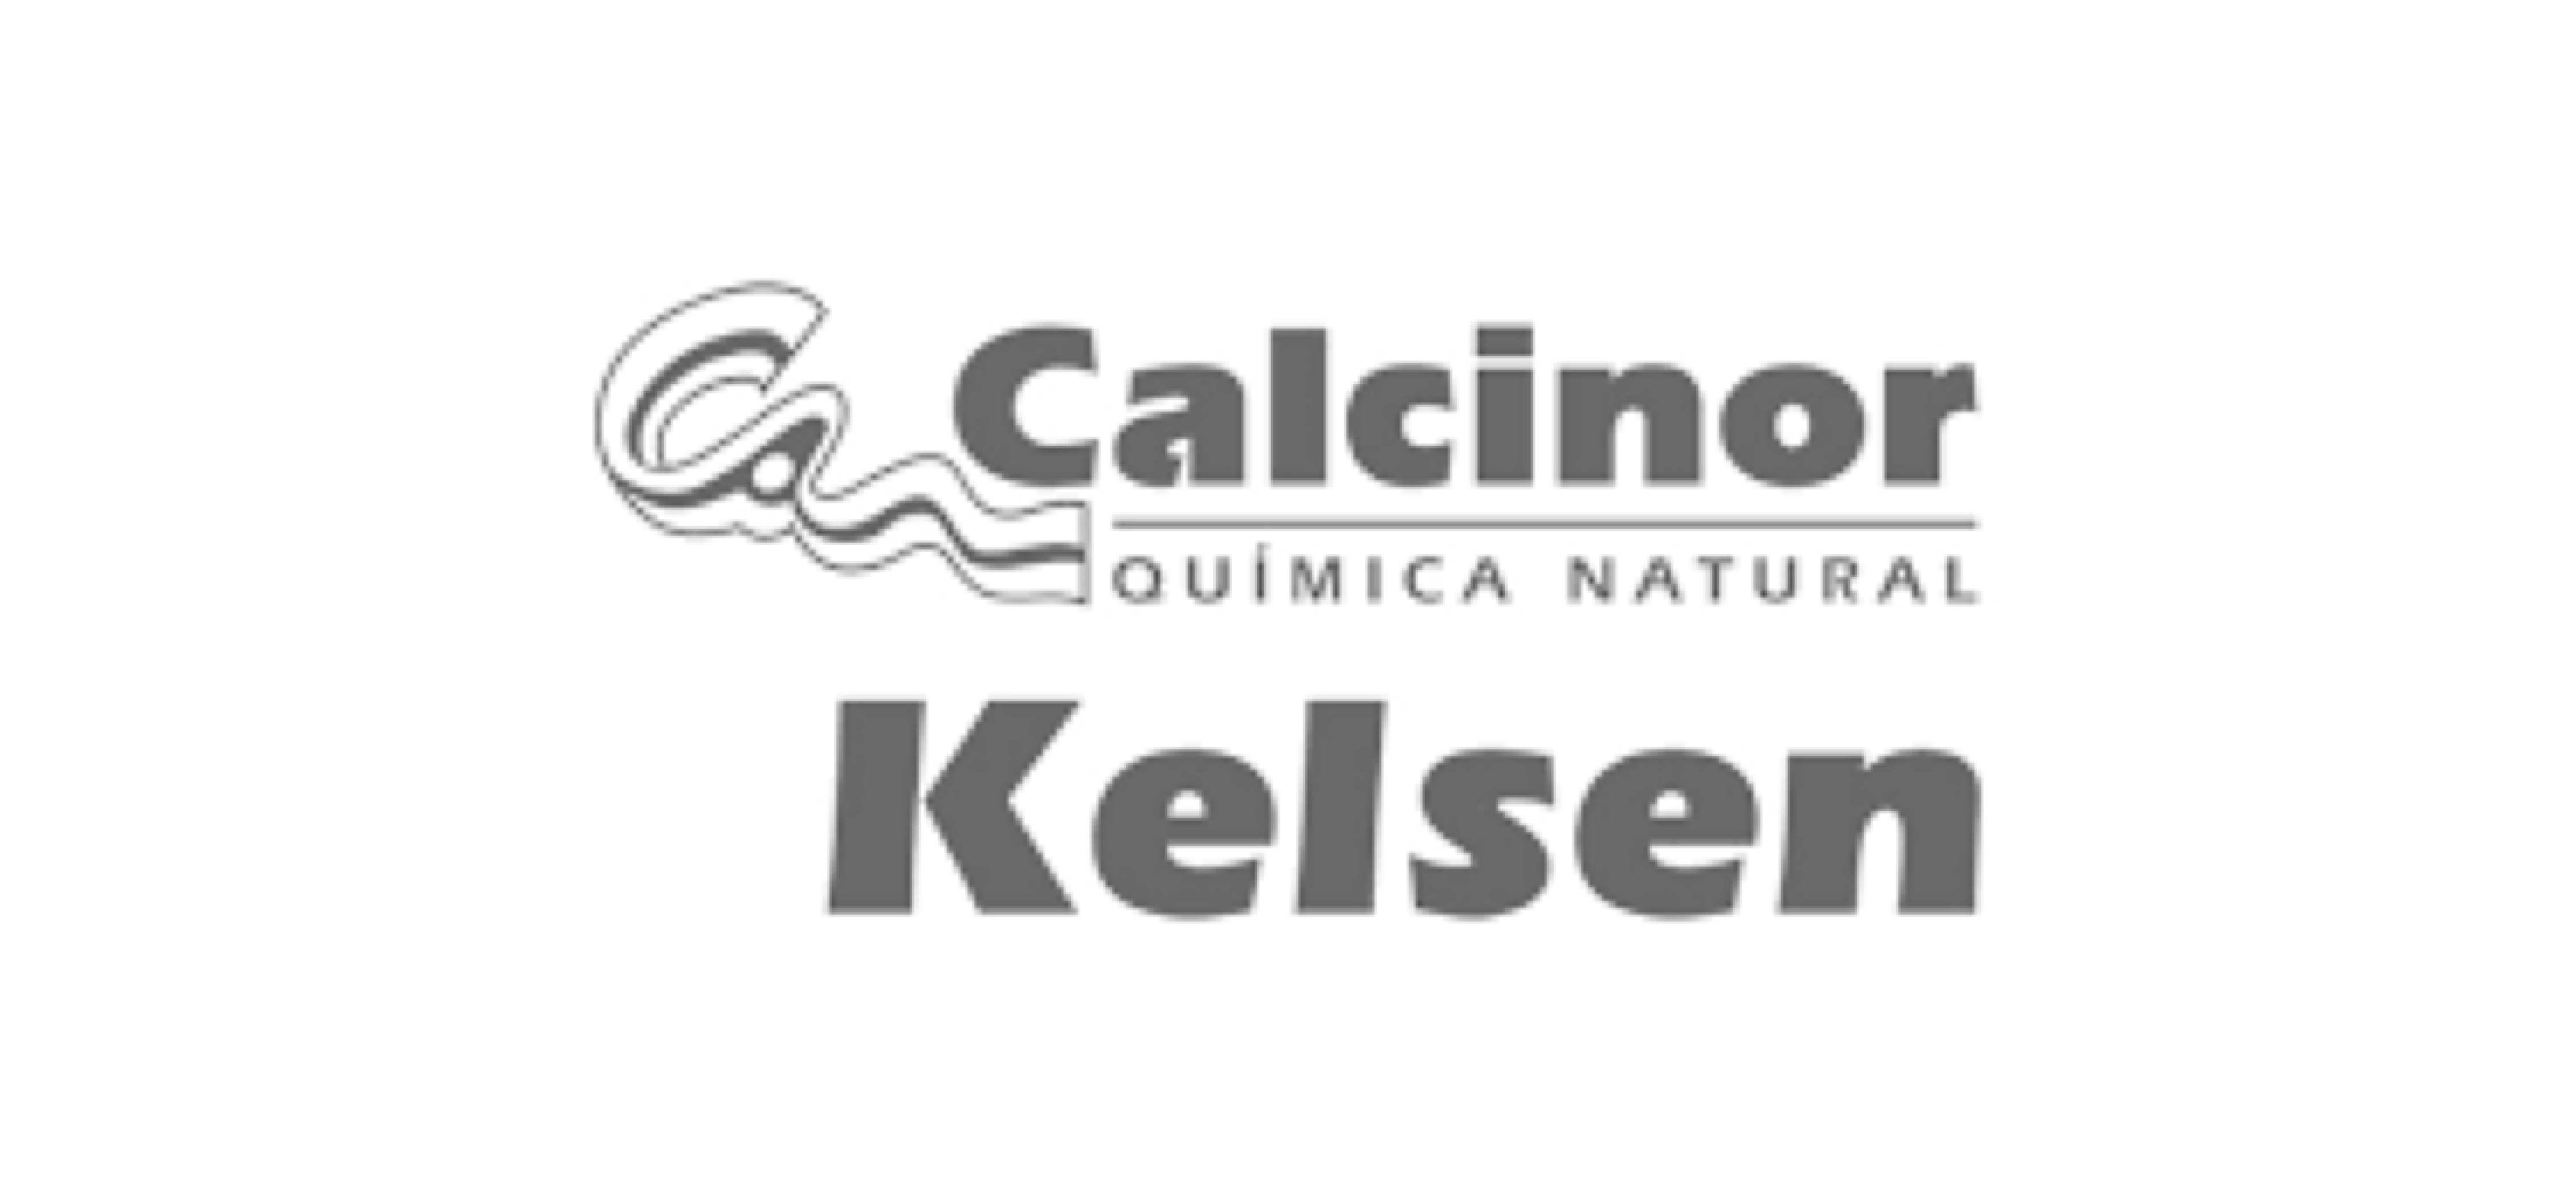 Kelsen Logo